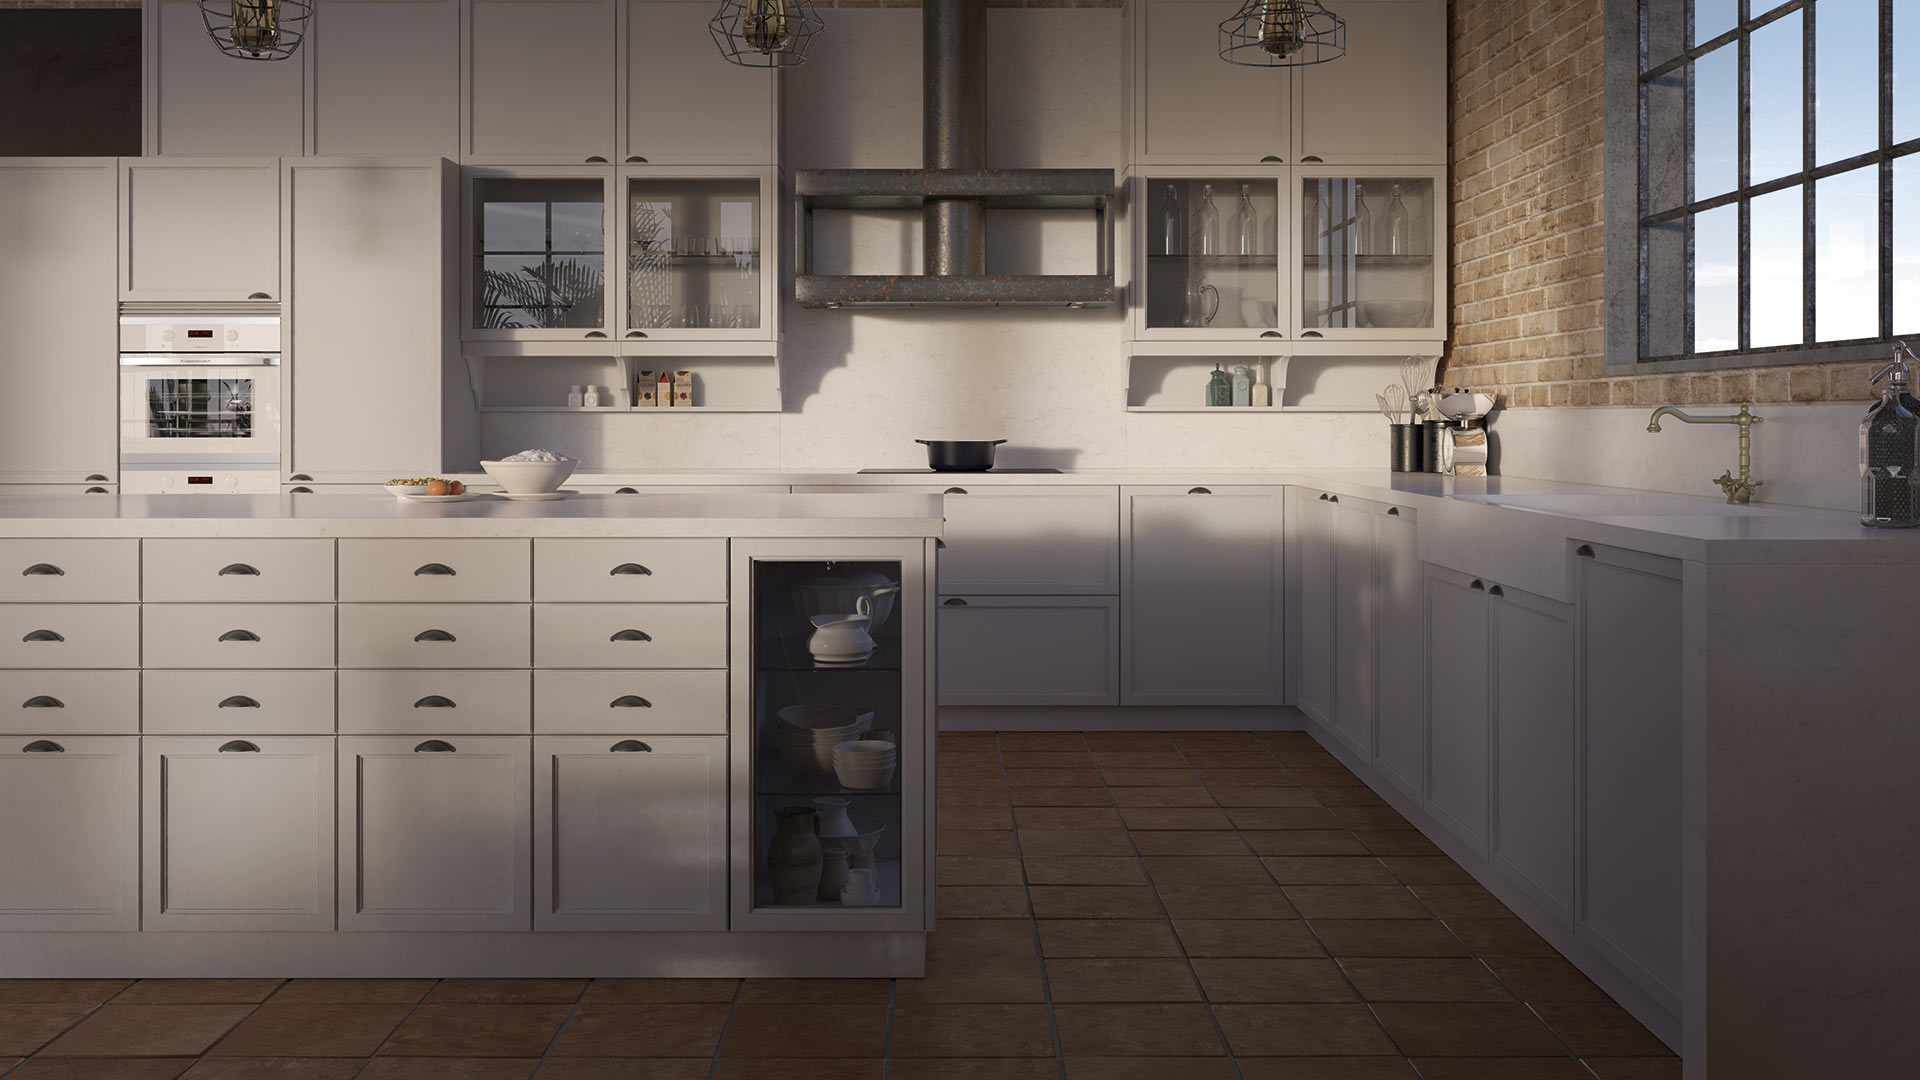 Espaciosa cocina de diseño clásico con mobiliario en color blanco